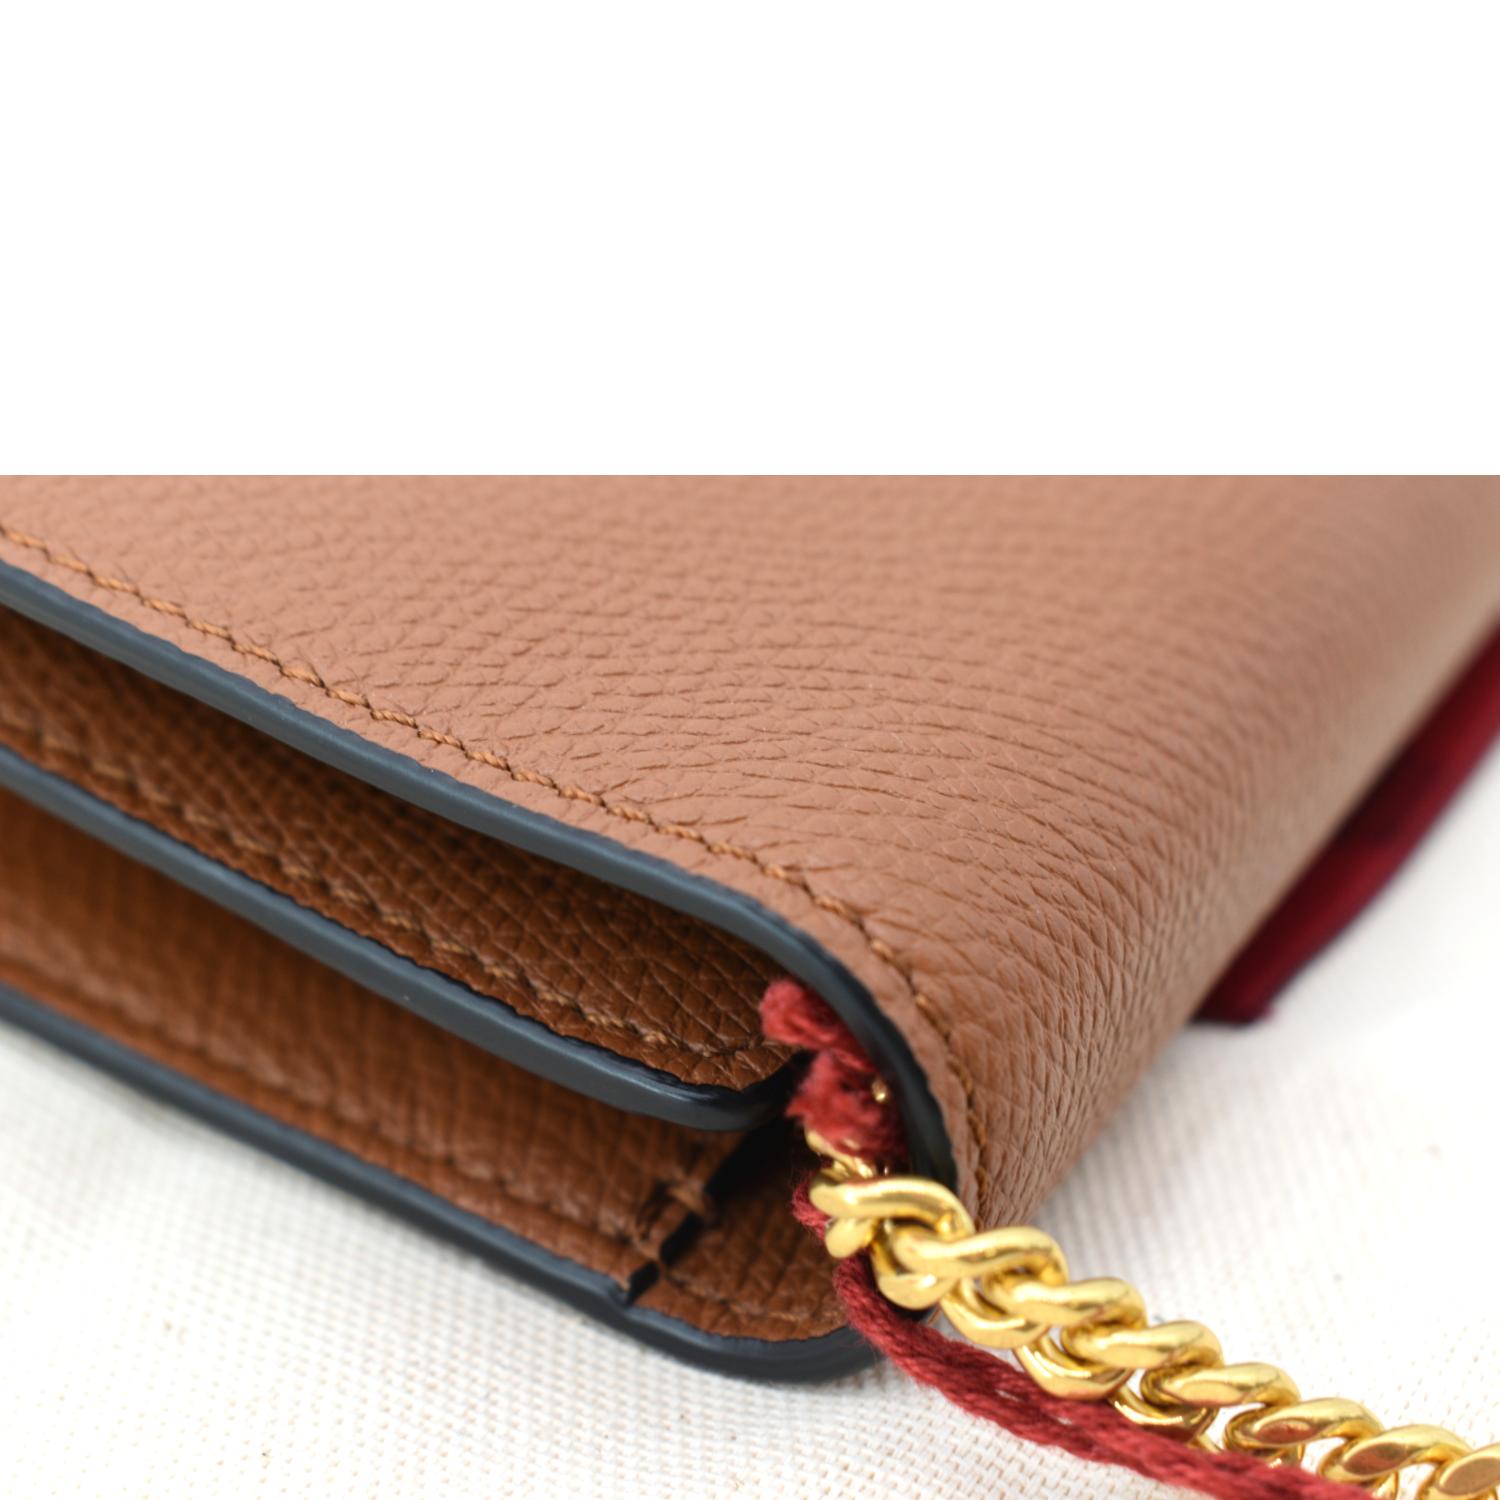 Vsling leather handbag Valentino Garavani Orange in Leather - 32164833